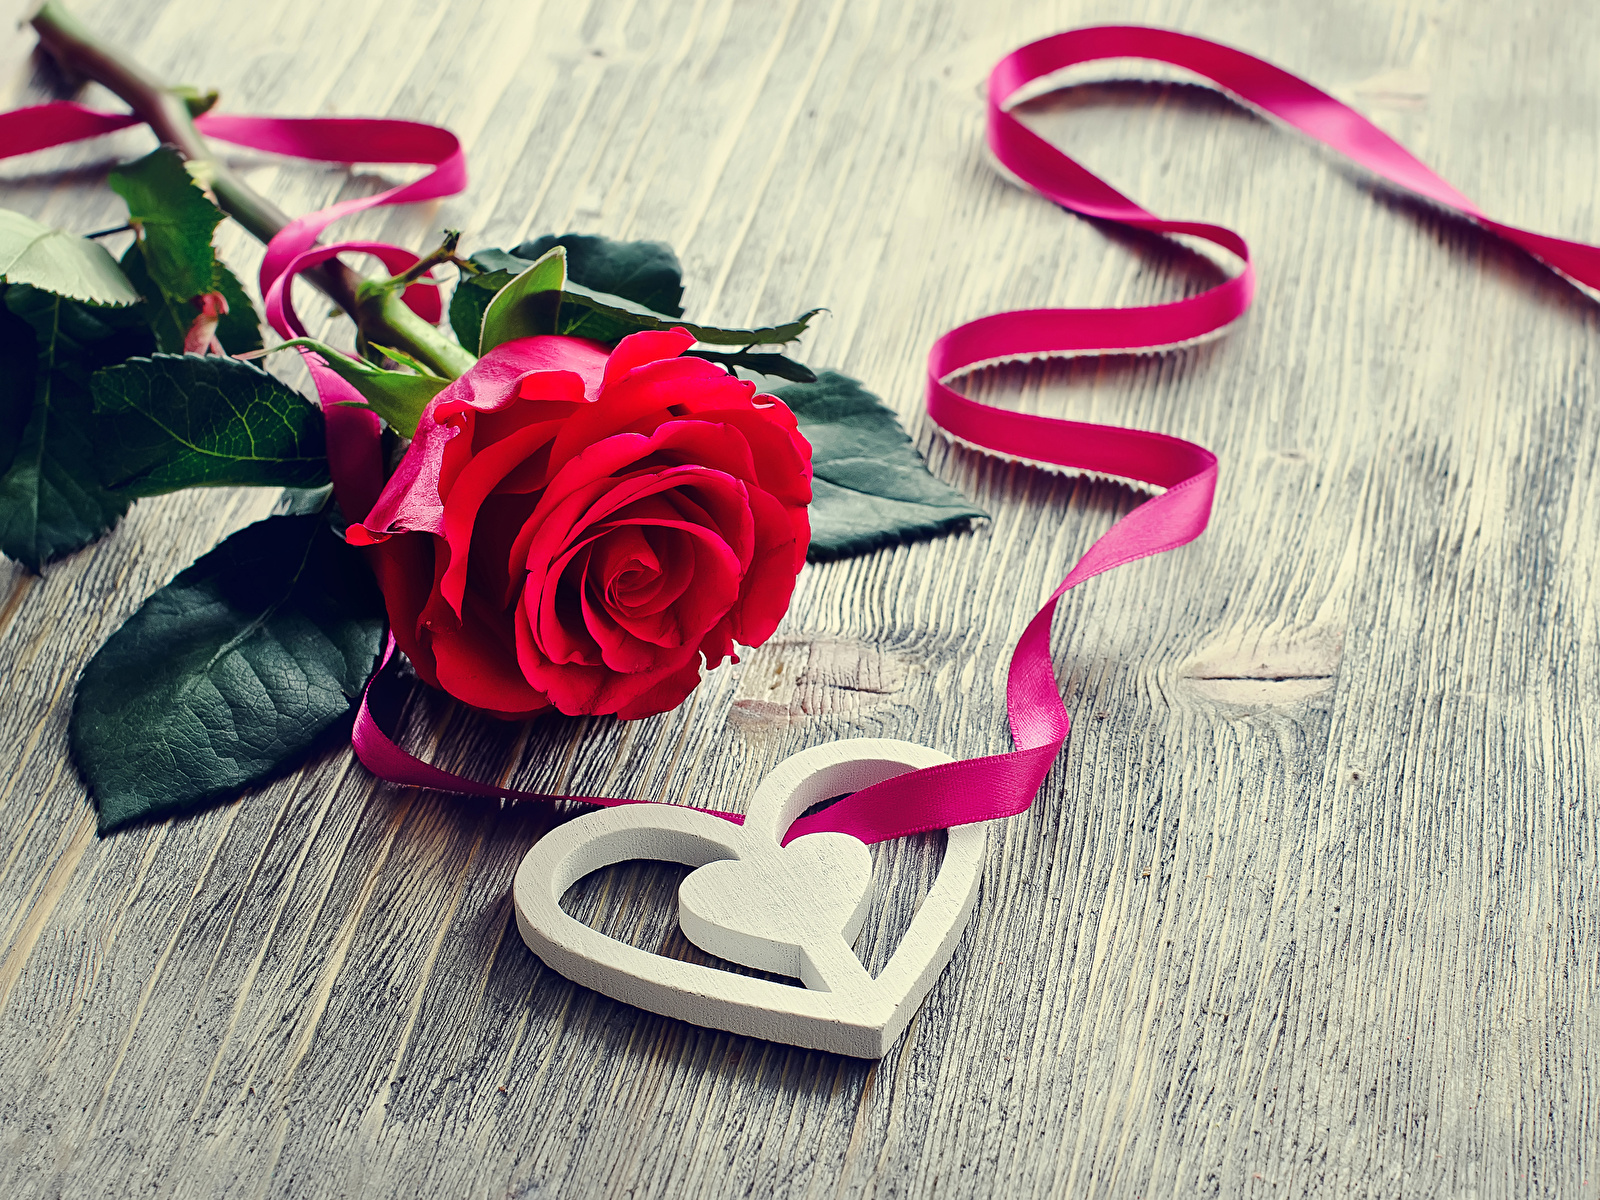 Фото День всех влюблённых серце роза красных Цветы Лента Праздники 1600x1200 День святого Валентина Сердце сердца сердечко Розы красная красные Красный цветок ленточка